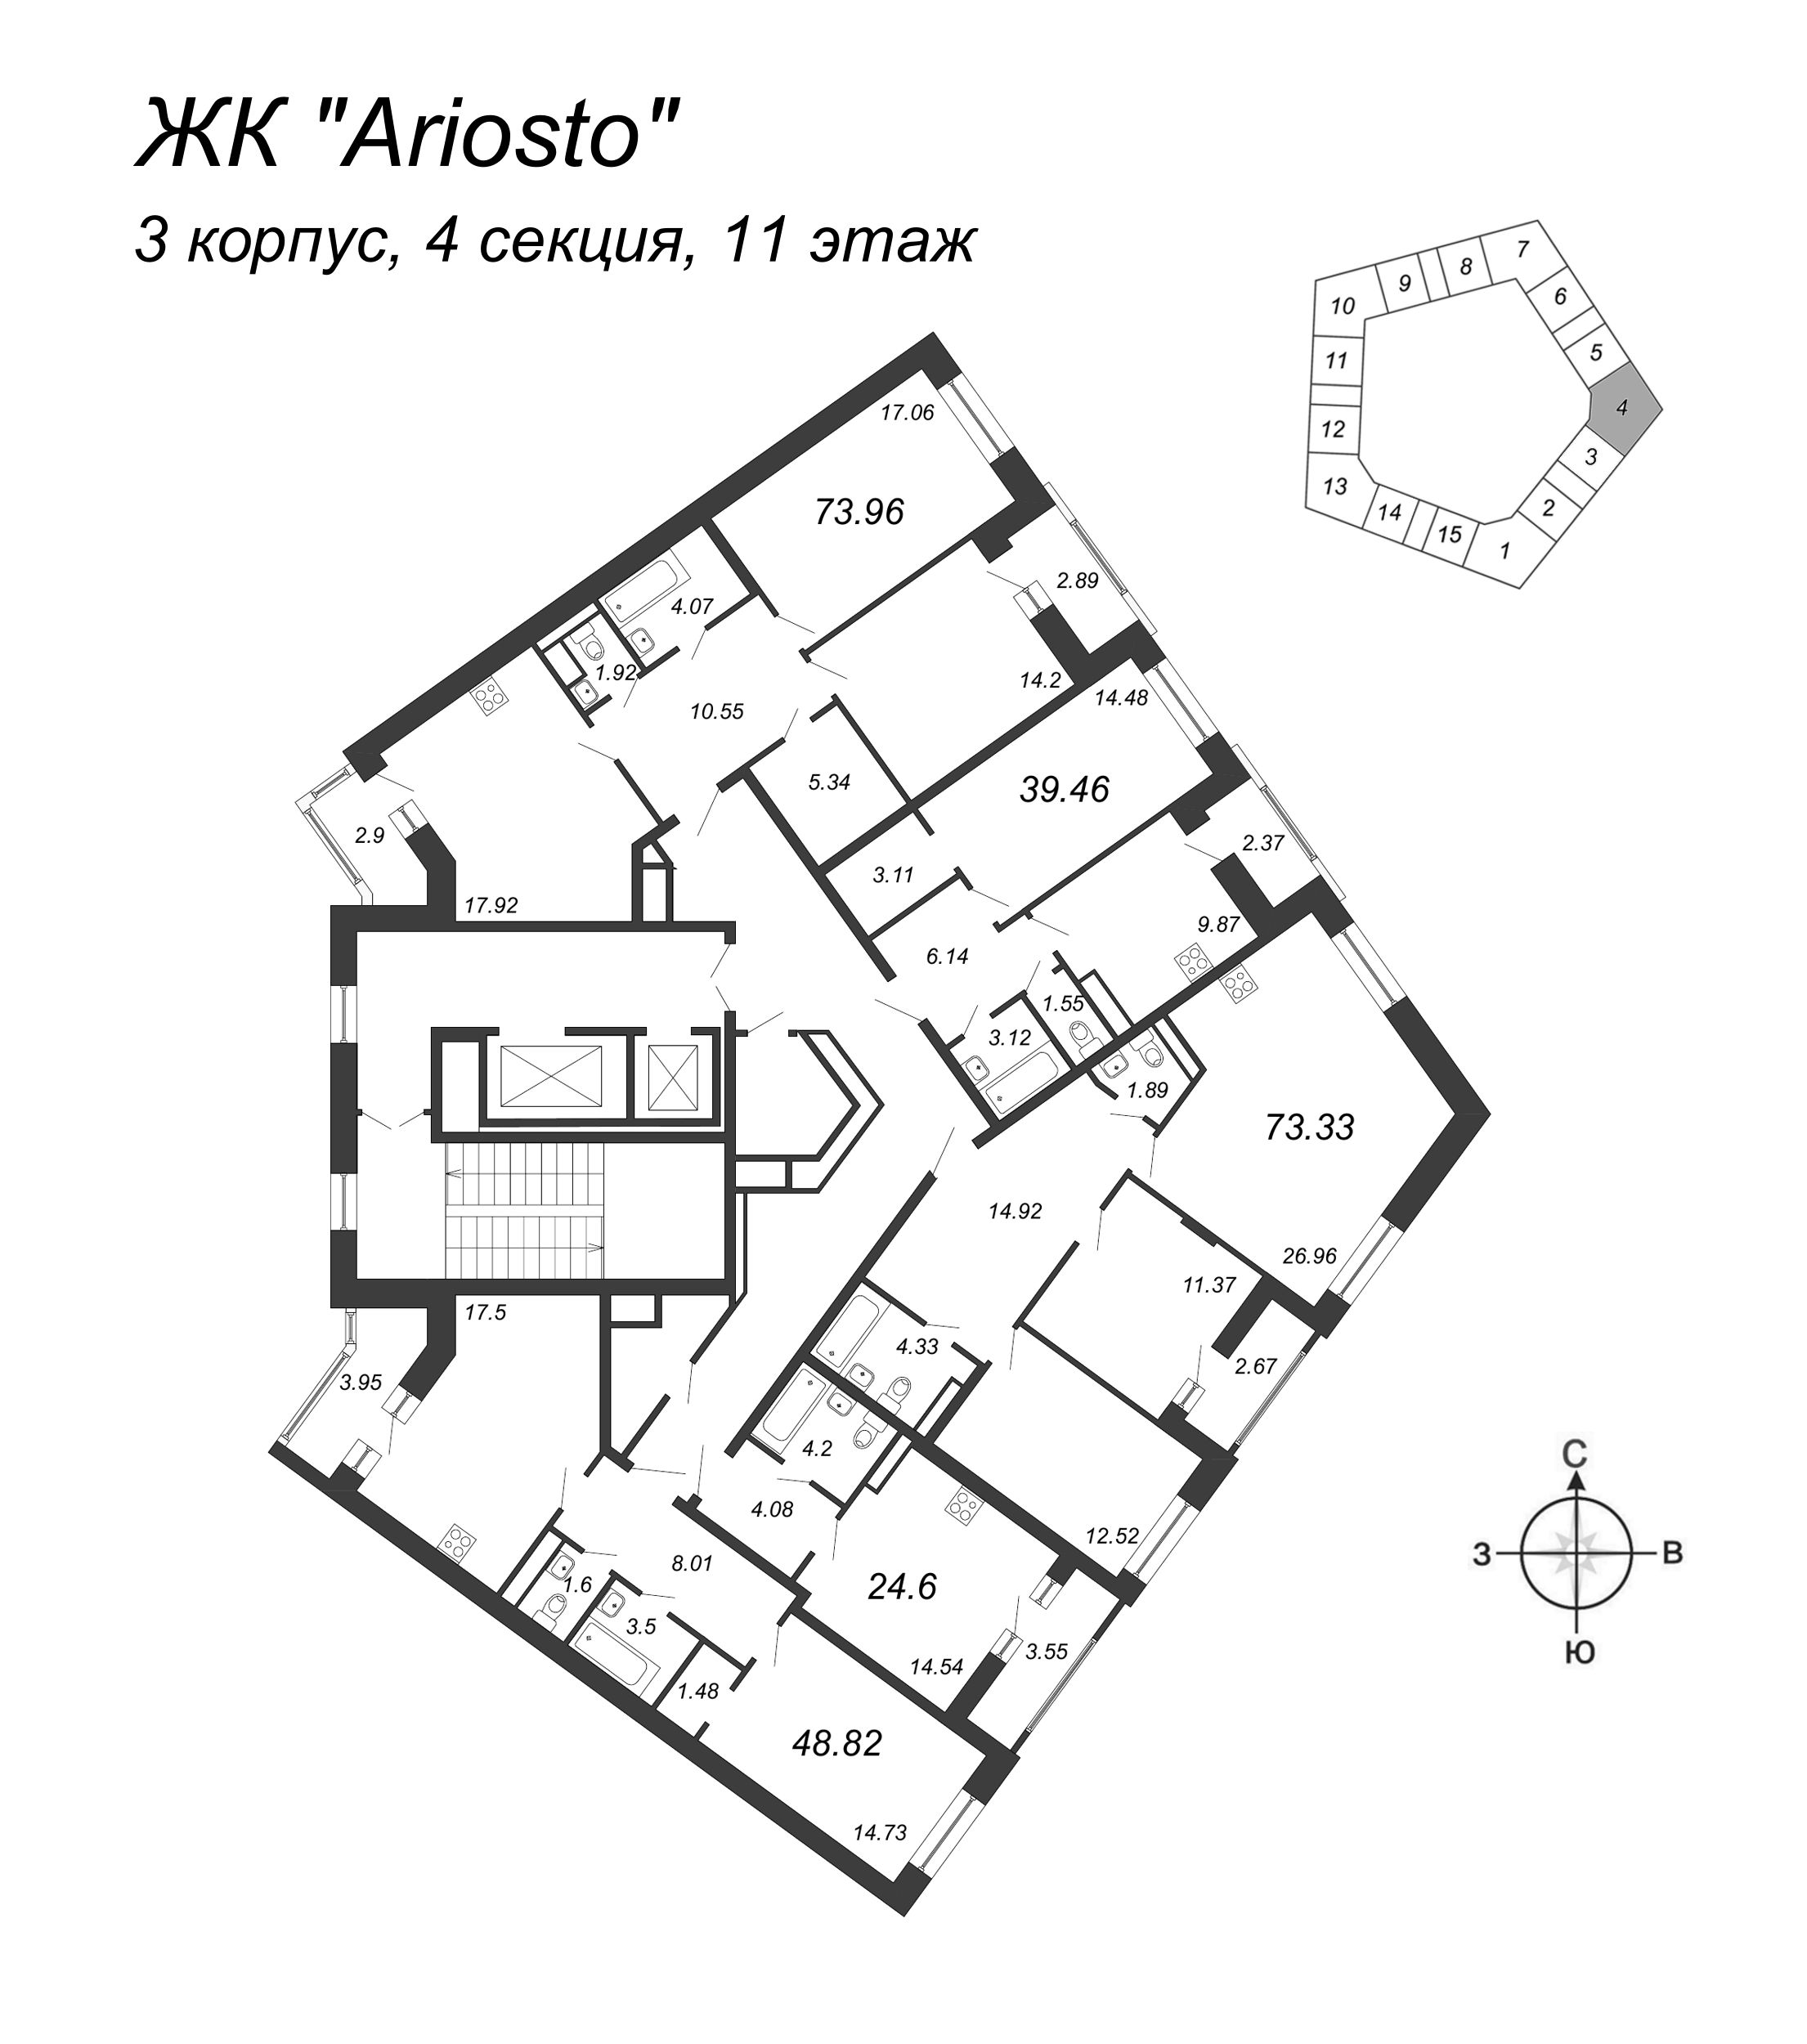 3-комнатная (Евро) квартира, 73.33 м² в ЖК "Ariosto" - планировка этажа